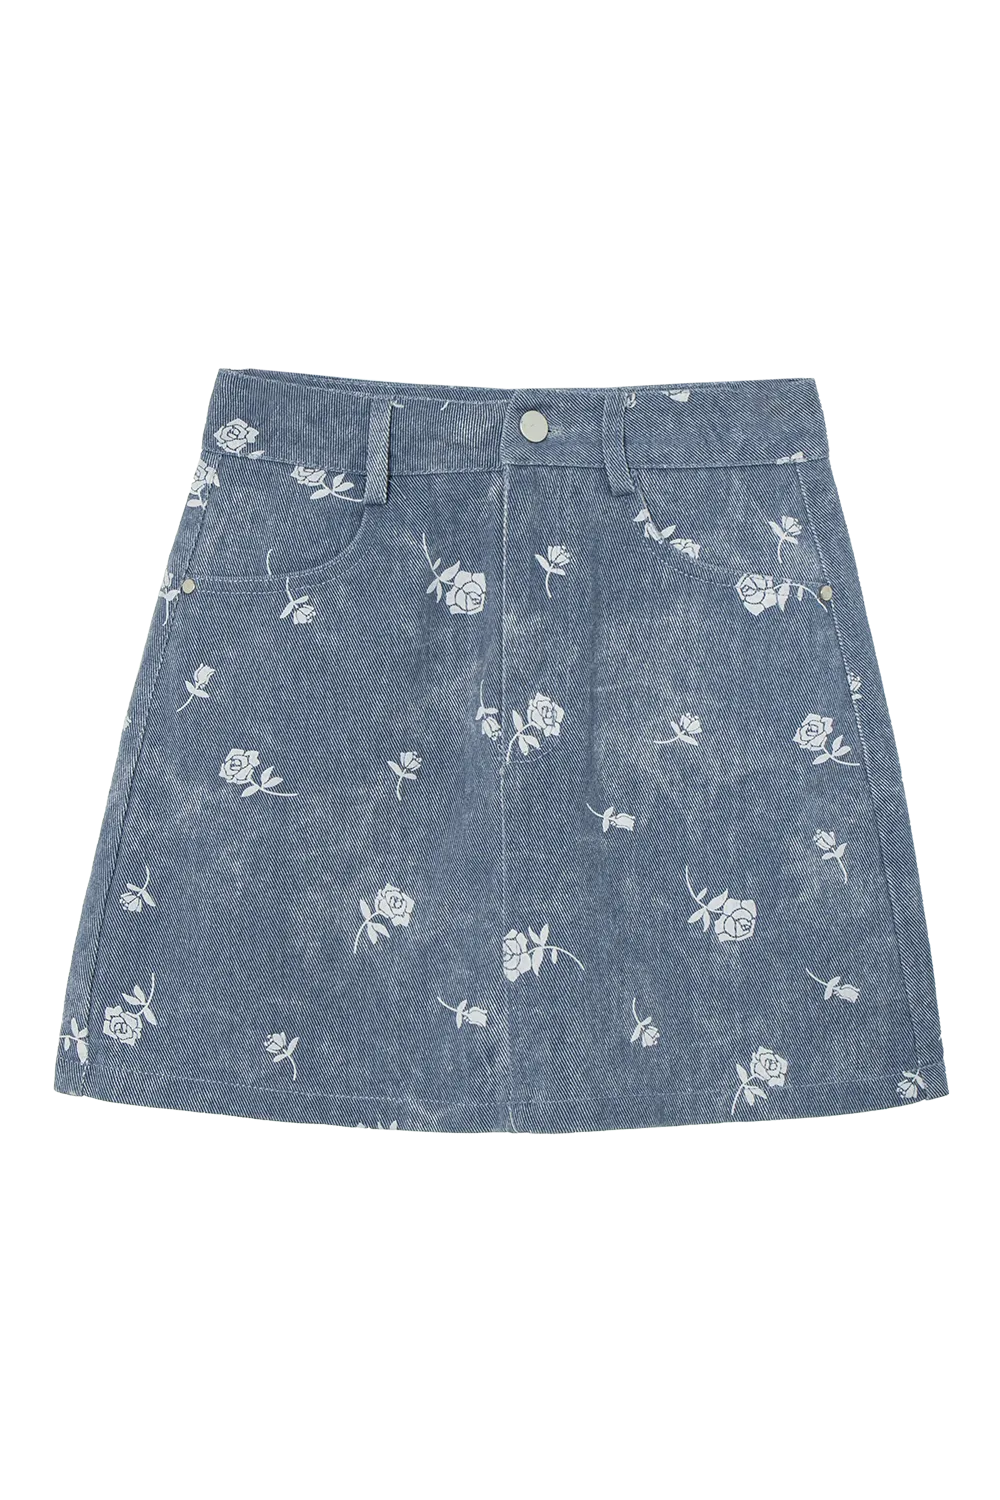 Skirt Denim A-Line Pertengahan Peha Wanita dengan Cetakan Bunga